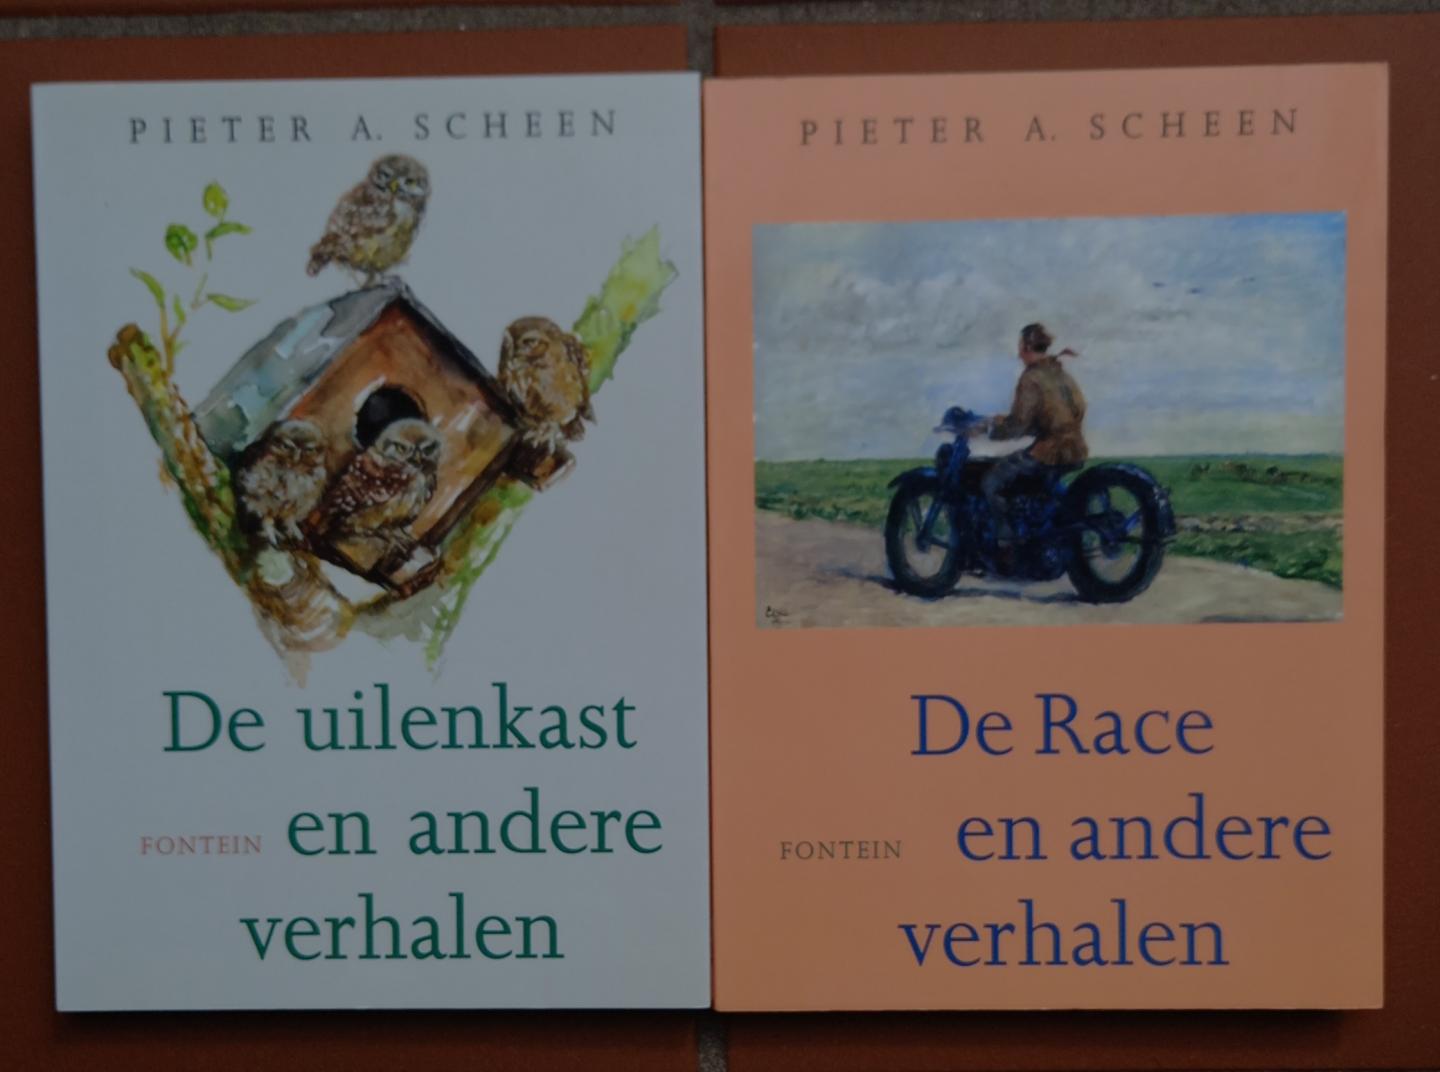 Scheen, Pieter A. - 2 titels: 1. De Race en andere verhalen + 2. De uilenkast en andere verhalen